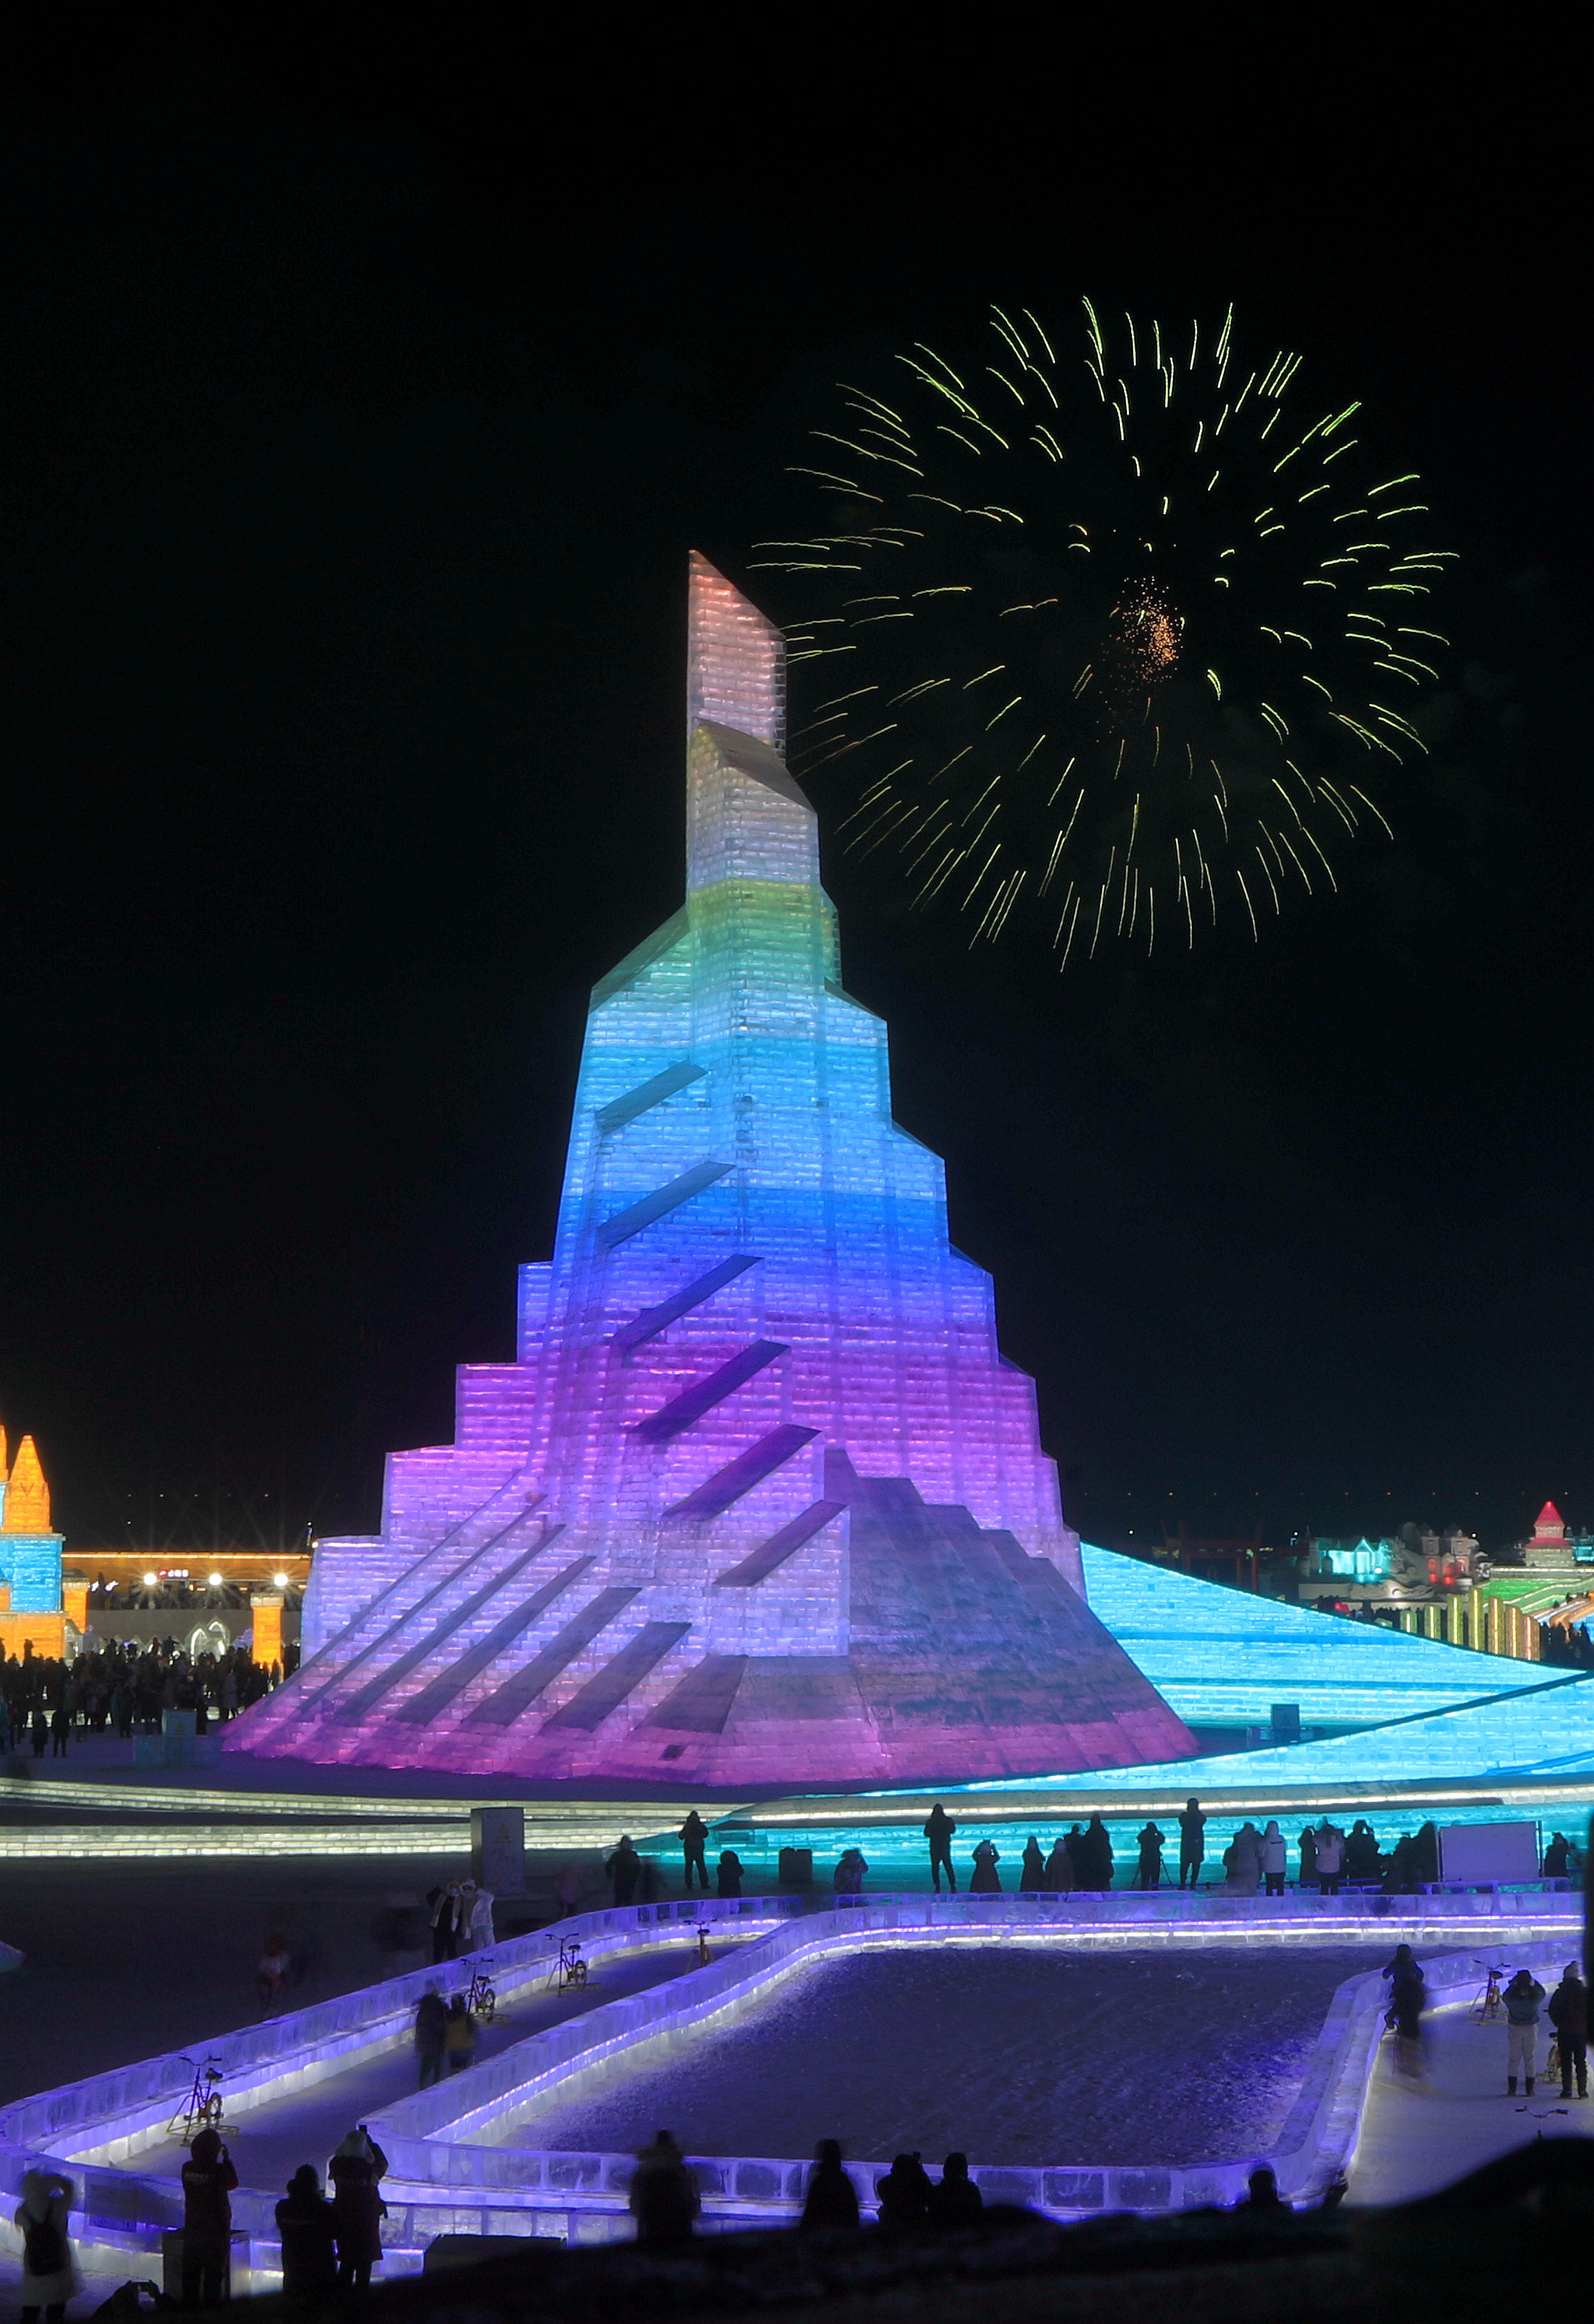 哈尔滨冰雪大世界:主塔圣火之巅如同点燃的奥运圣火